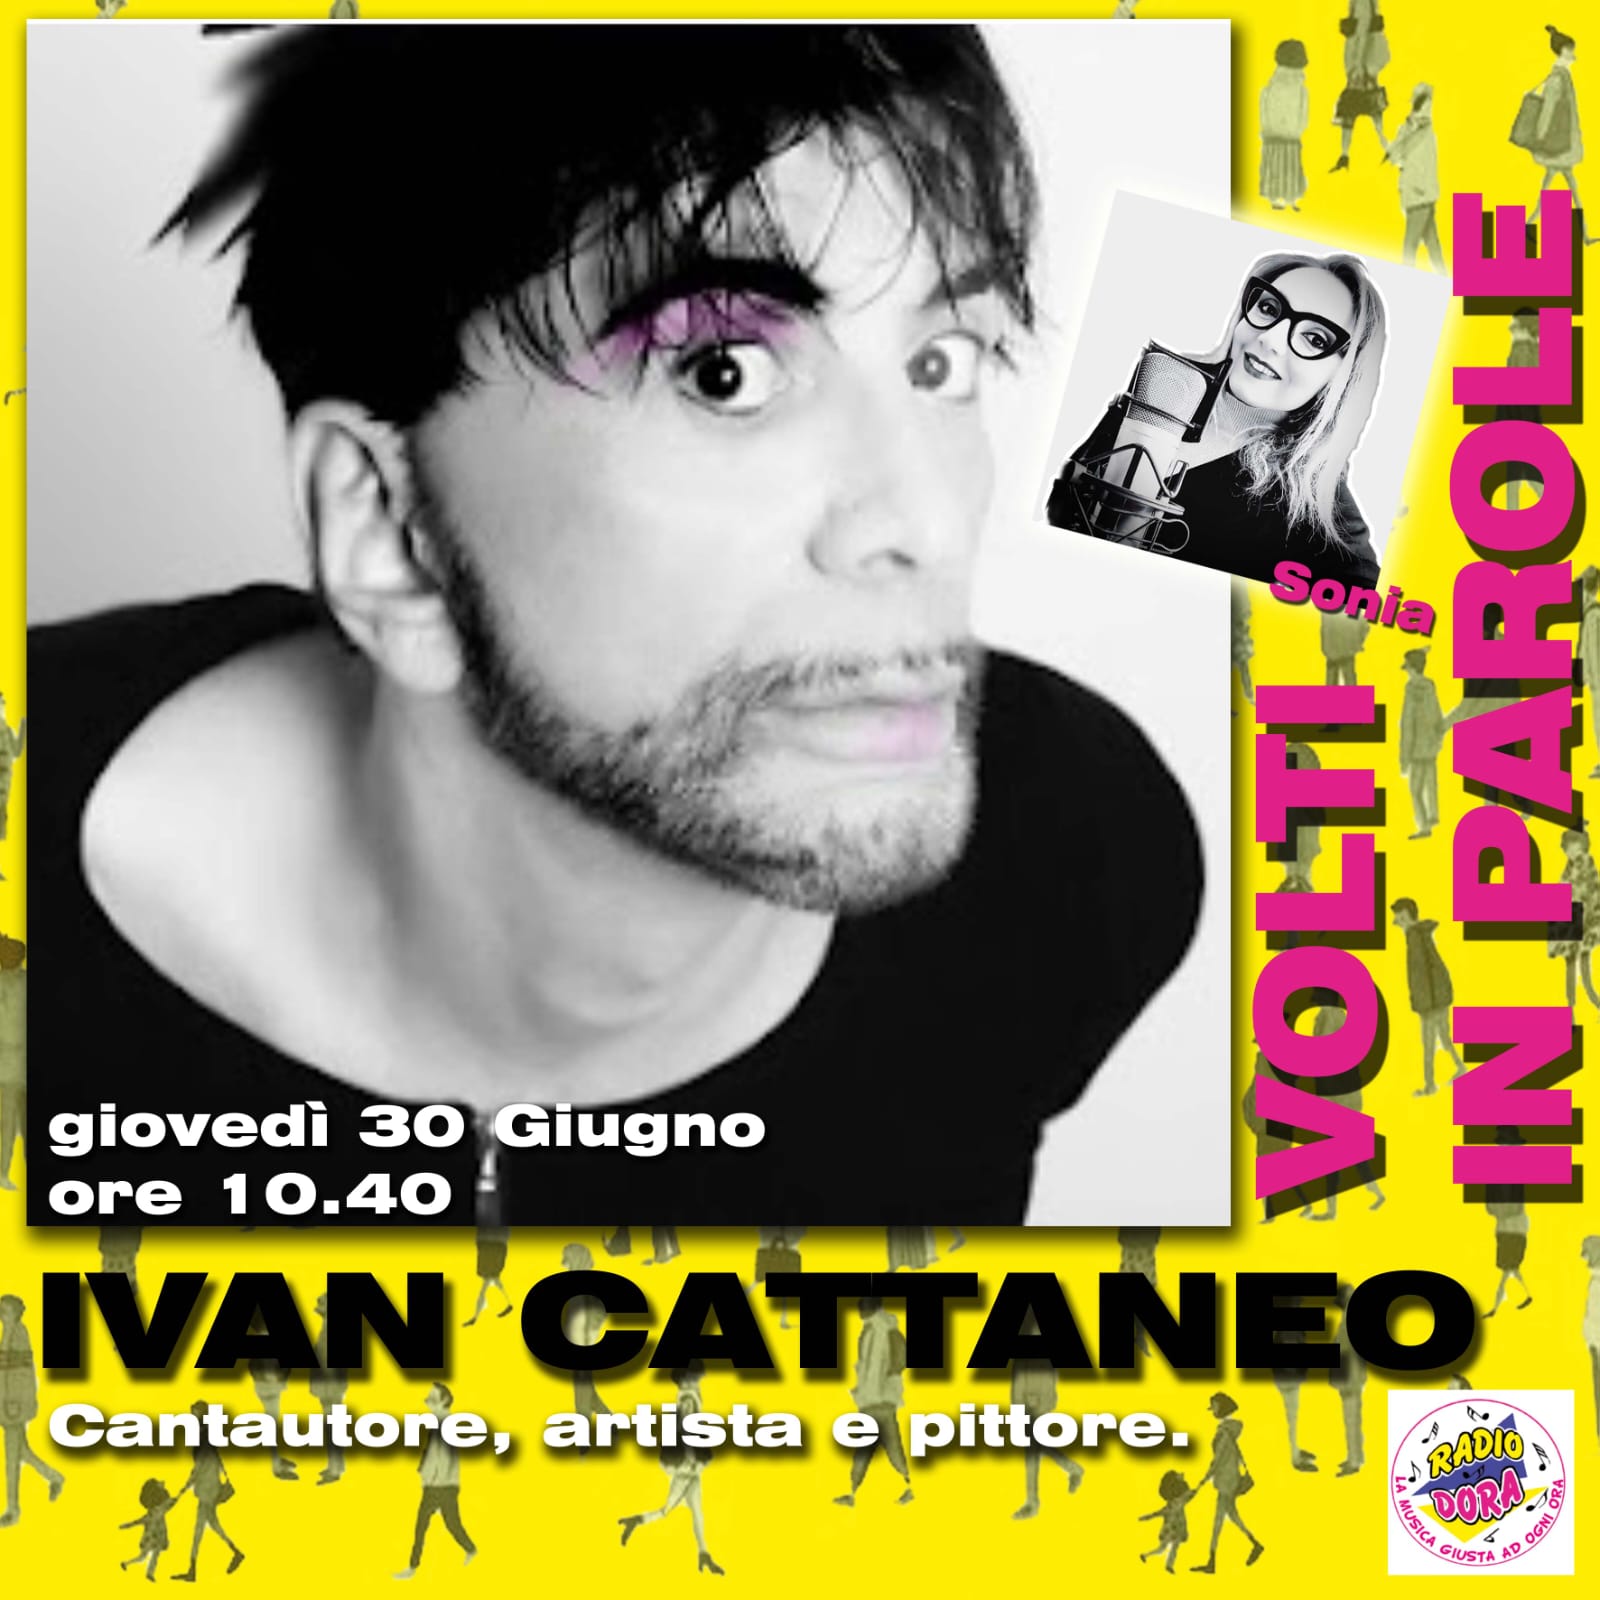 Il colorato mondo di Ivan Cattaneo. L’artista eclettico si racconta ai nostri microfoni.